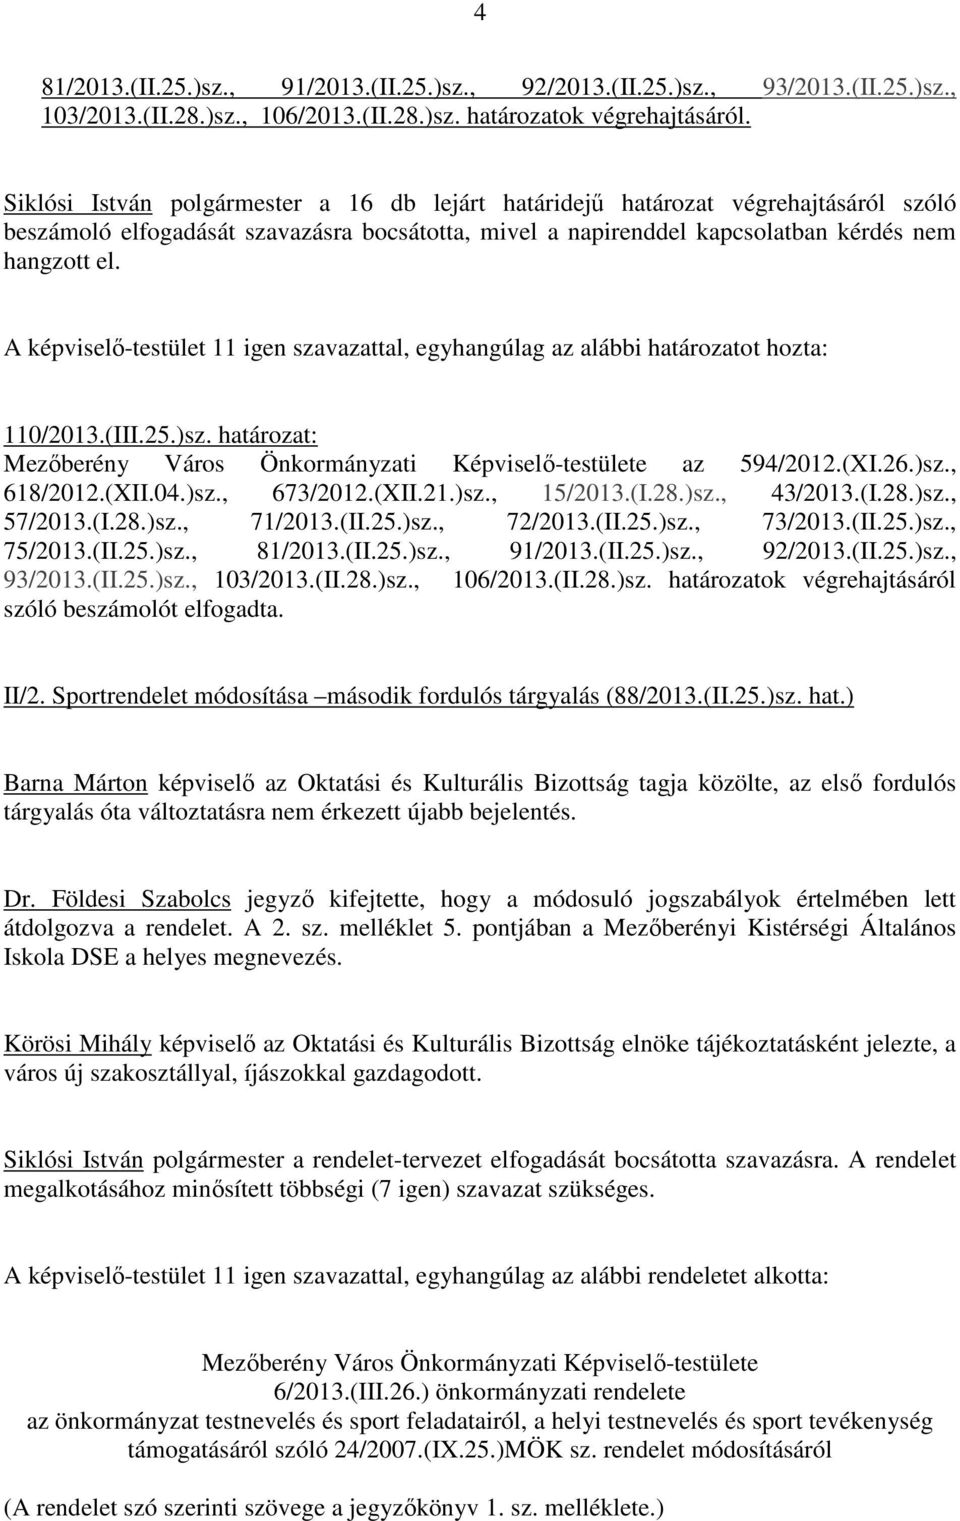 (III.25.)sz. határozat: Mezıberény Város Önkormányzati Képviselı-testülete az 594/2012.(XI.26.)sz., 618/2012.(XII.04.)sz., 673/2012.(XII.21.)sz., 15/2013.(I.28.)sz., 43/2013.(I.28.)sz., 57/2013.(I.28.)sz., 71/2013.